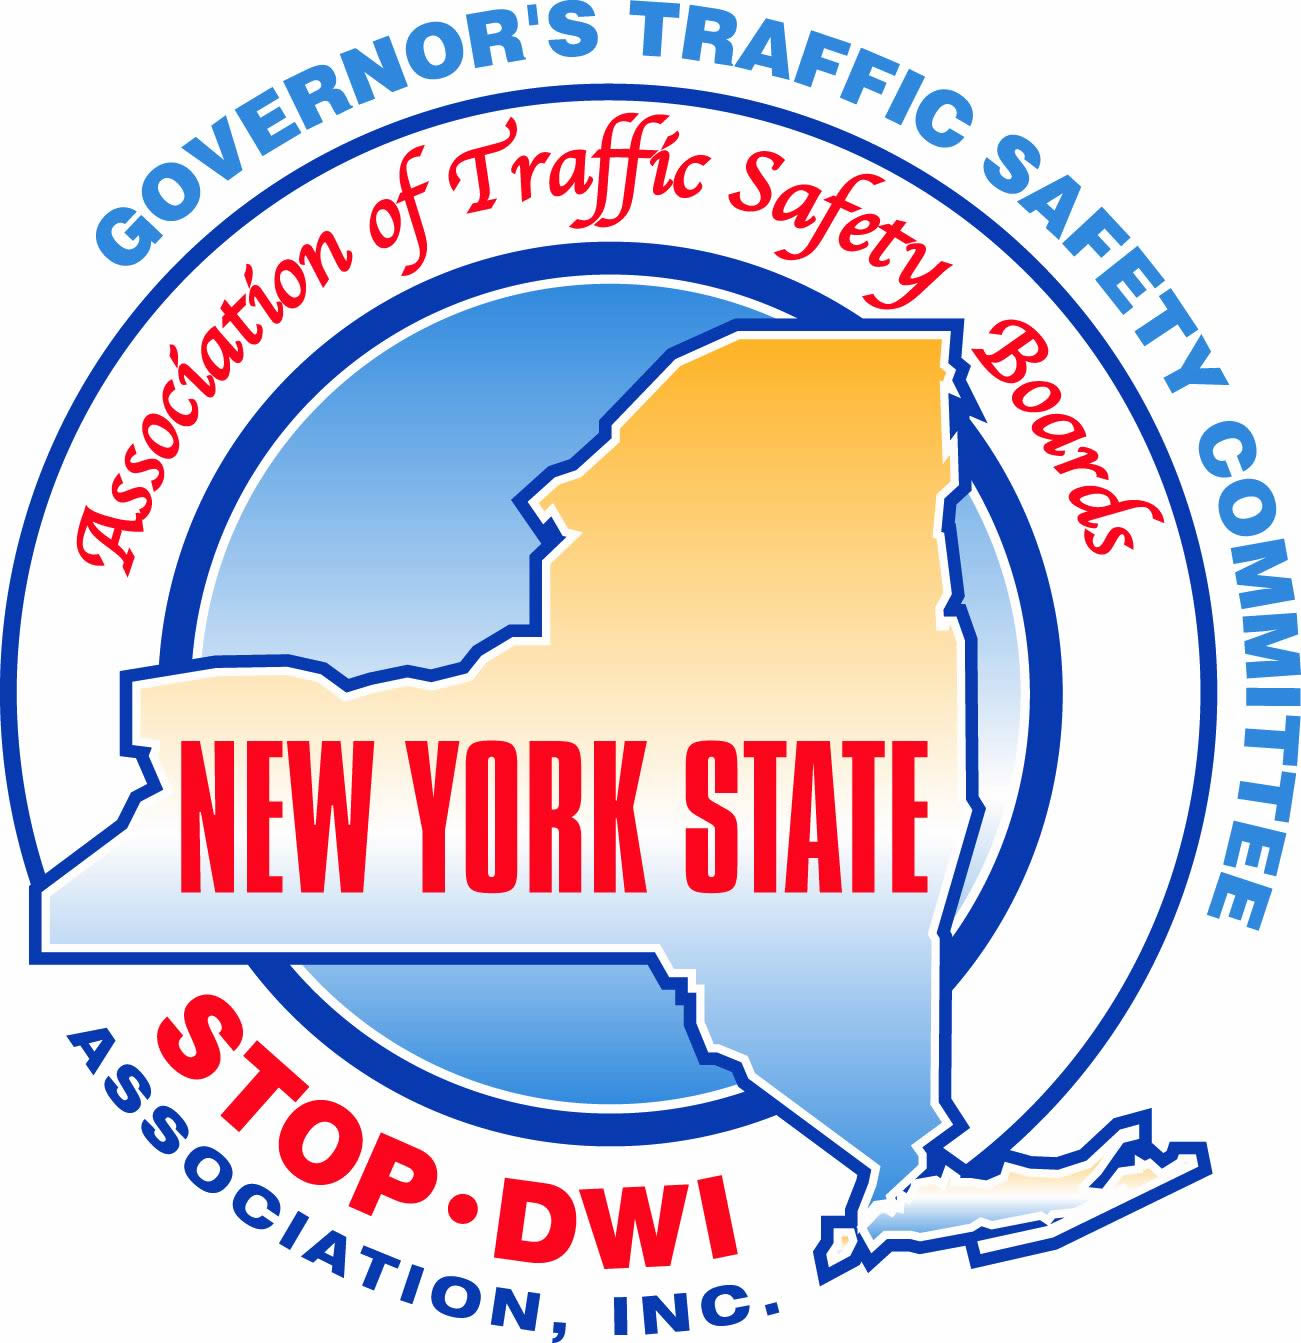 NY Highway Traffic Safety Symposium